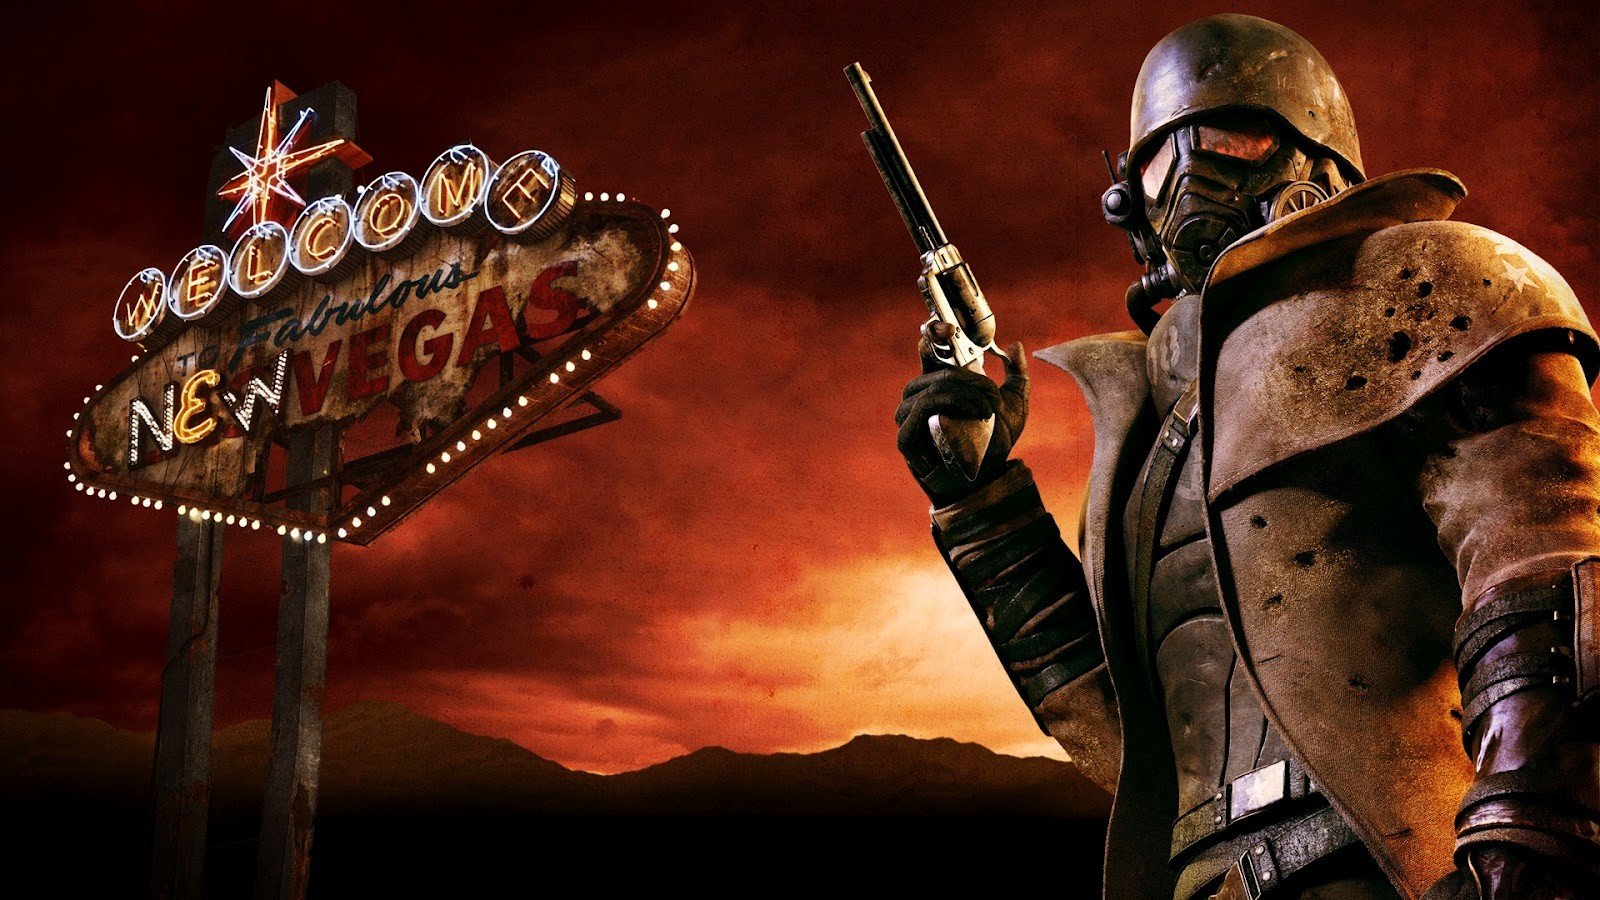 Fallout New Vegas - ПОЛНОЕ ПРОХОЖДЕНИЕ и СЕКРЕТЫ 45 СЕРИЯ приятного просмотра)))